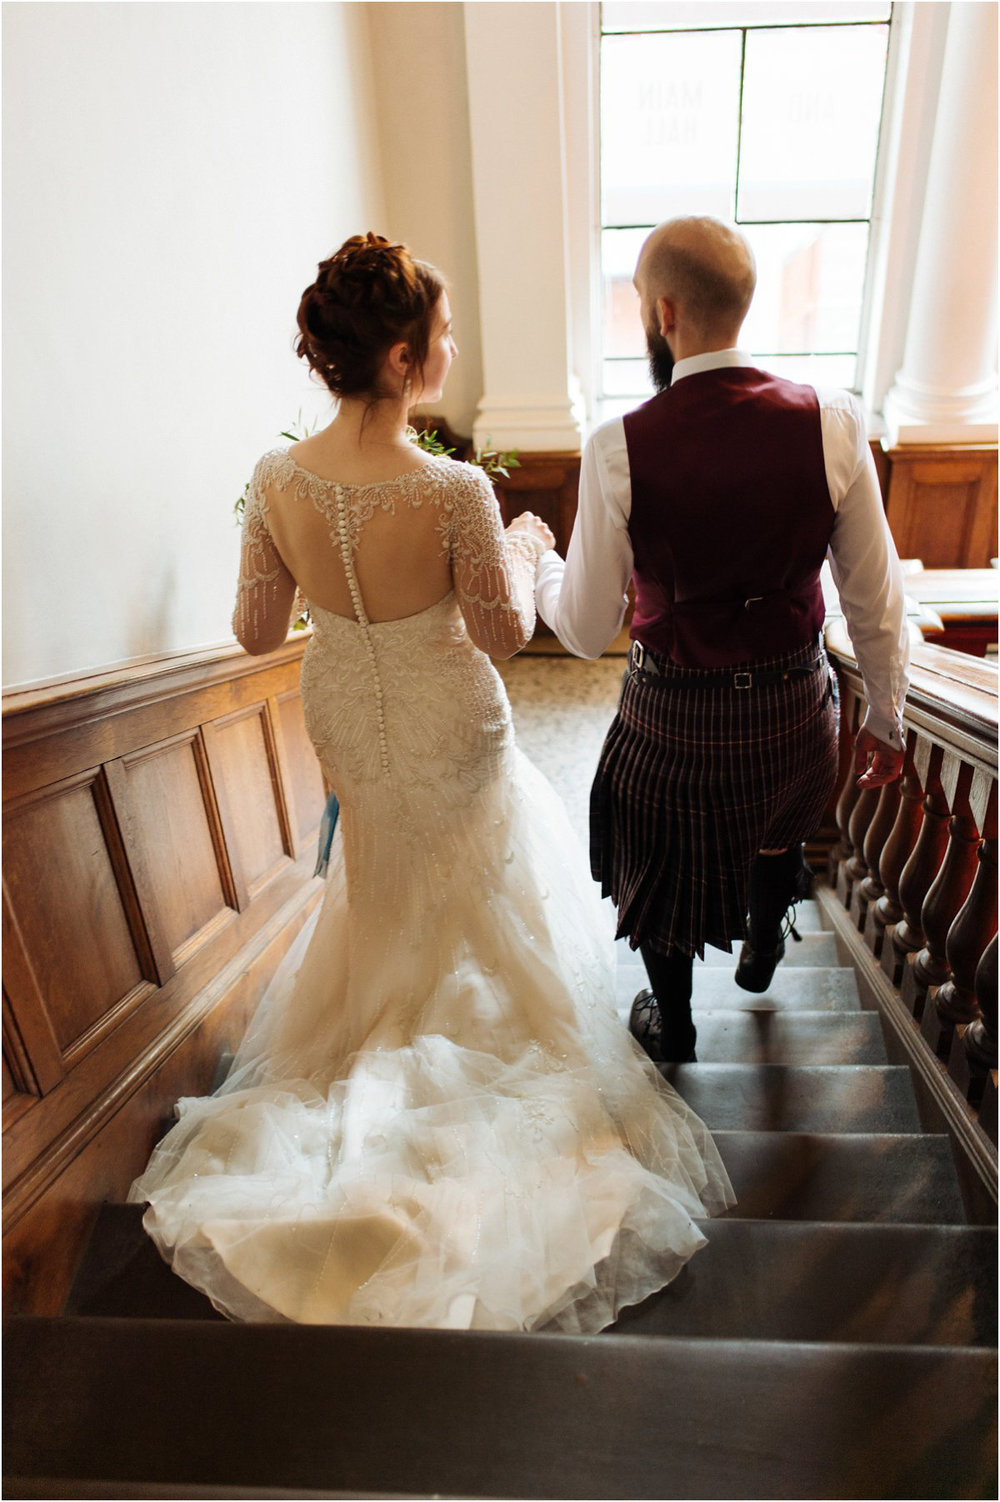  Summerhall Edinburgh wedding photography by Crofts & Kowalczyk 